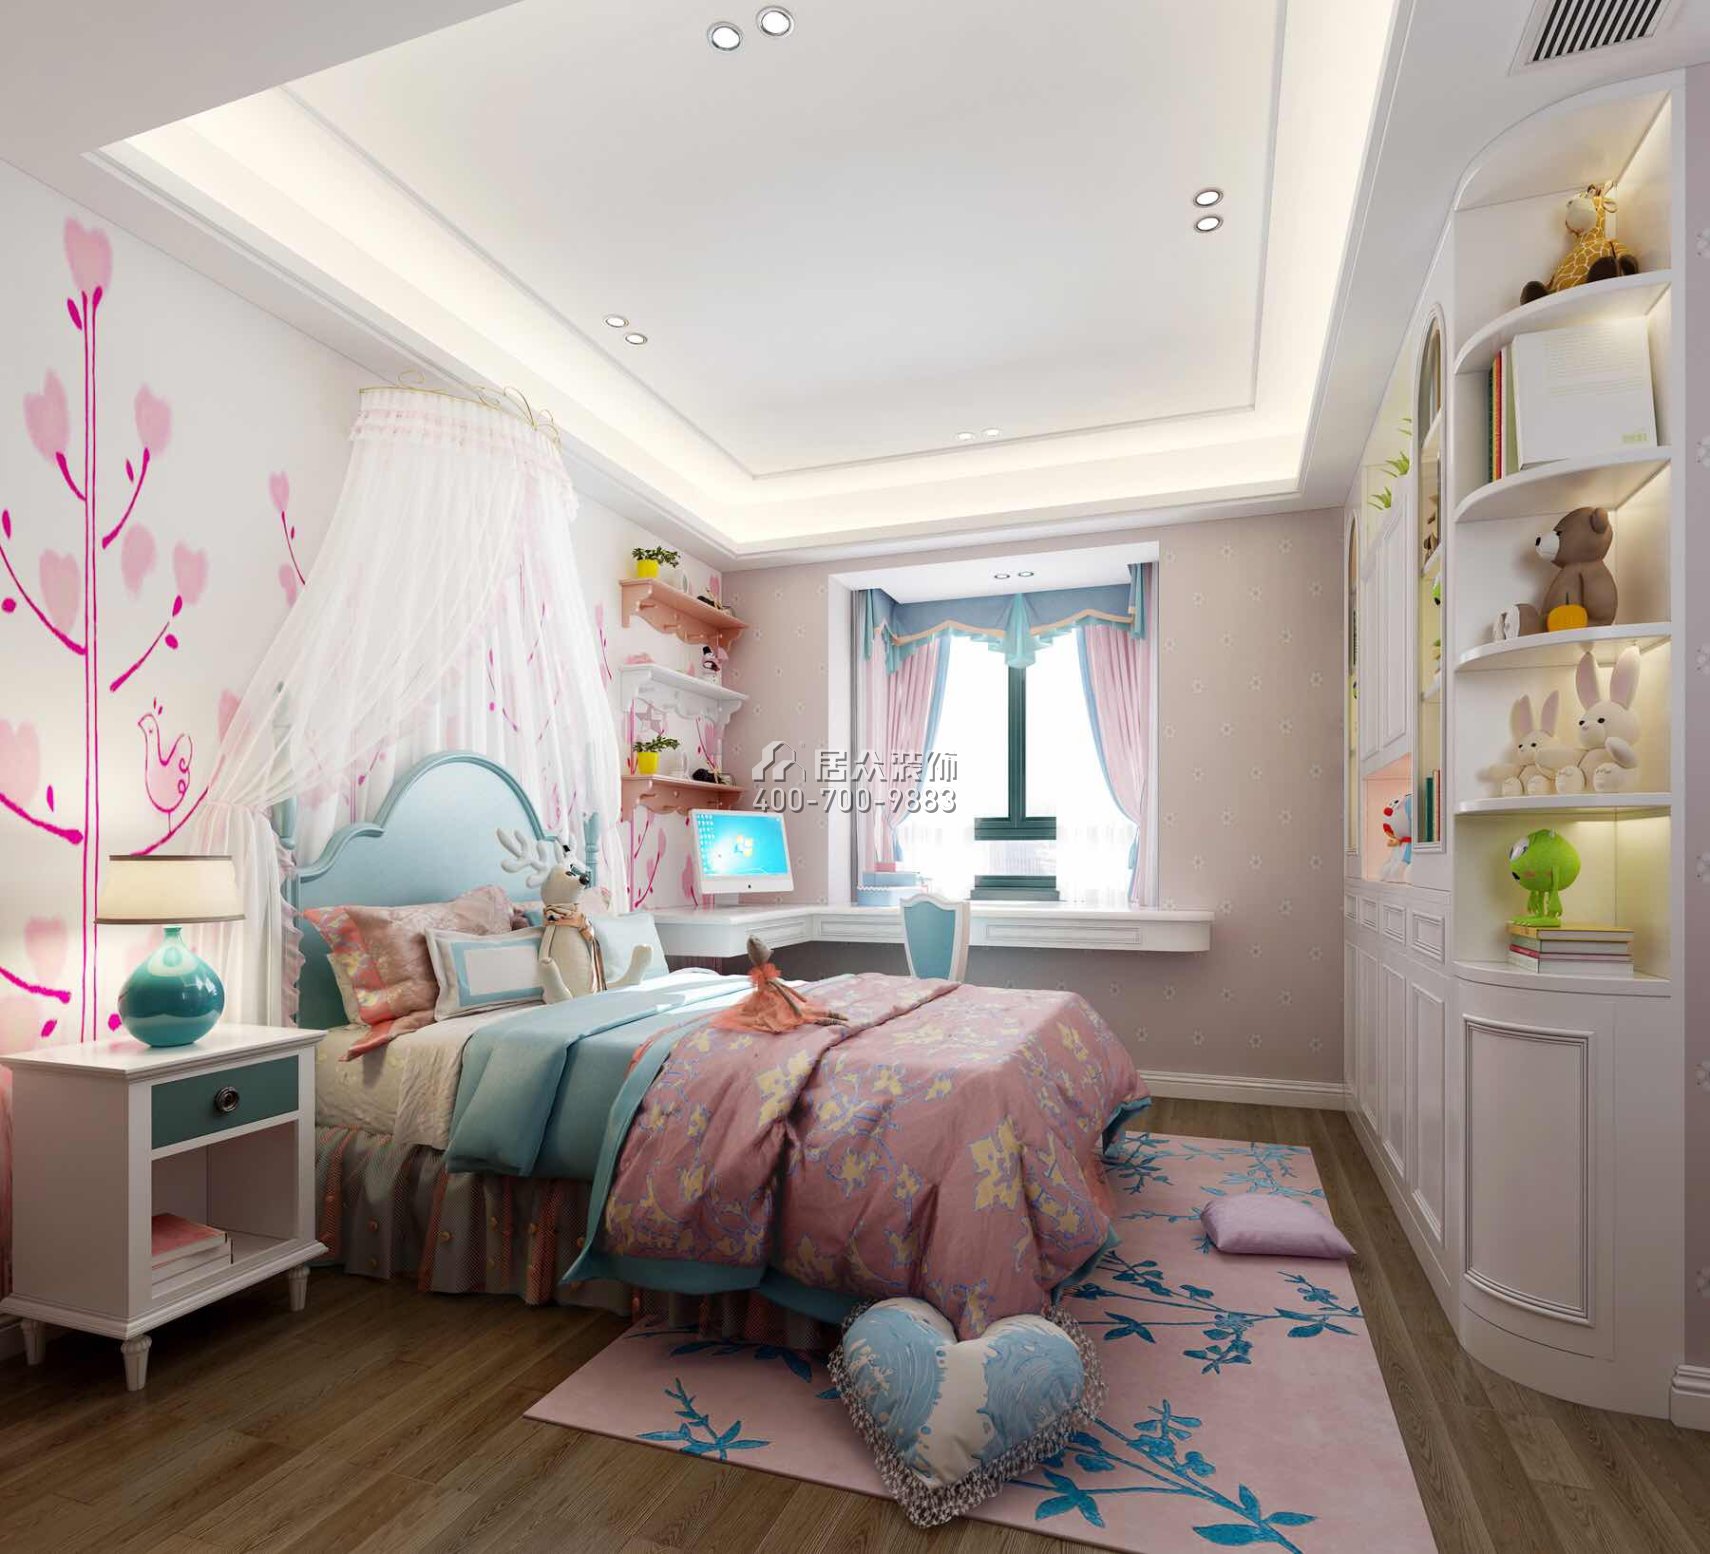 黃埔雅苑三期126平方米現代簡約風格平層戶型臥室裝修效果圖